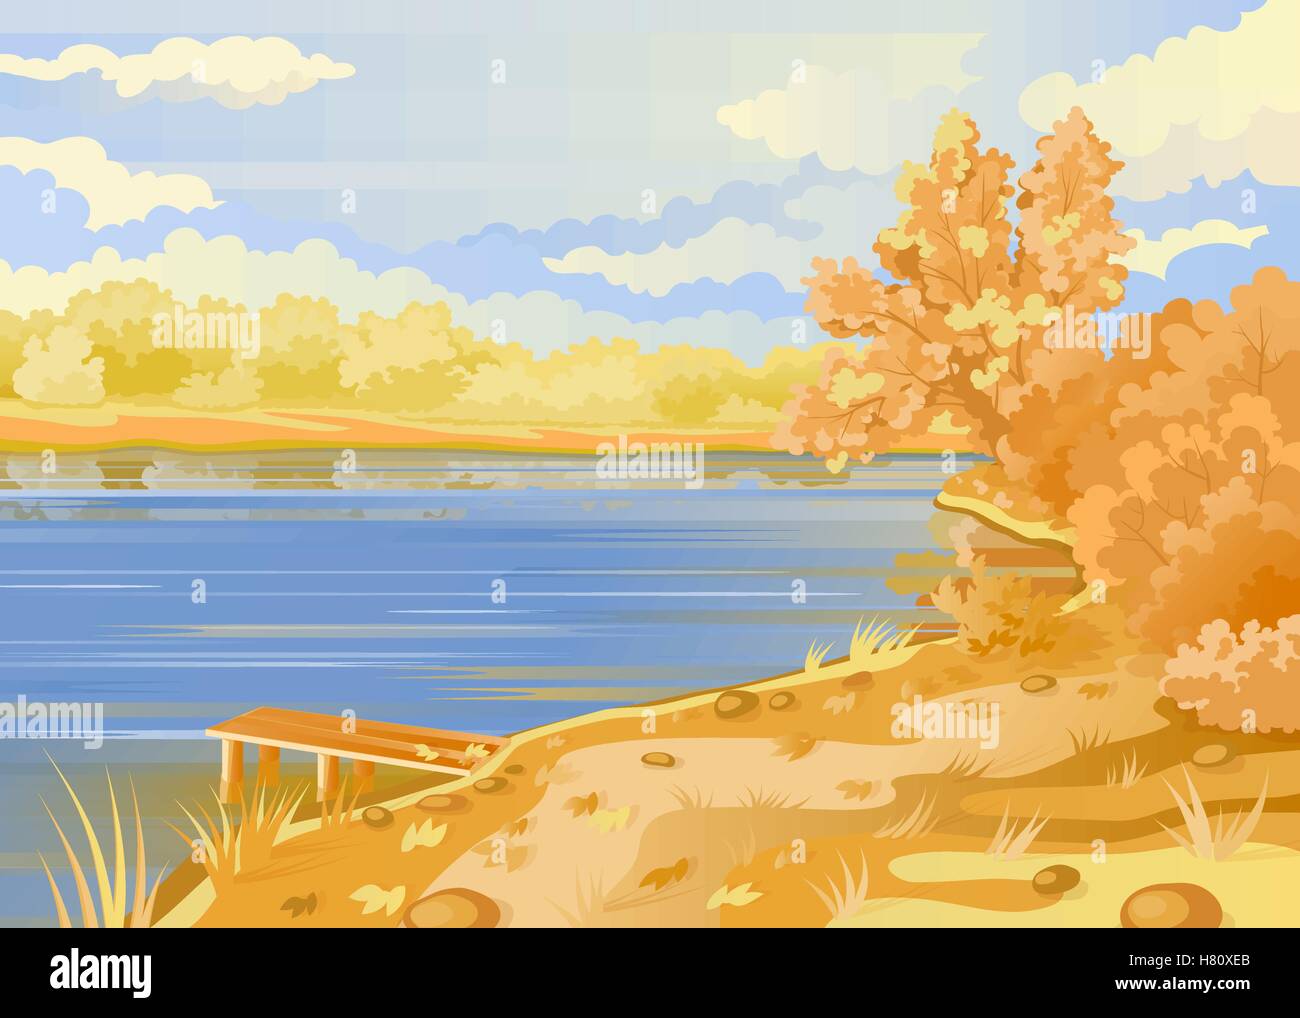 Herbstliche Landschaft unter freiem Himmel. Ufer des Flusses. Brückenpfeilers auf dem Hintergrund des Teiches. Bewölkter Himmel. Sträucher und Bäume in Pastell Stock Vektor